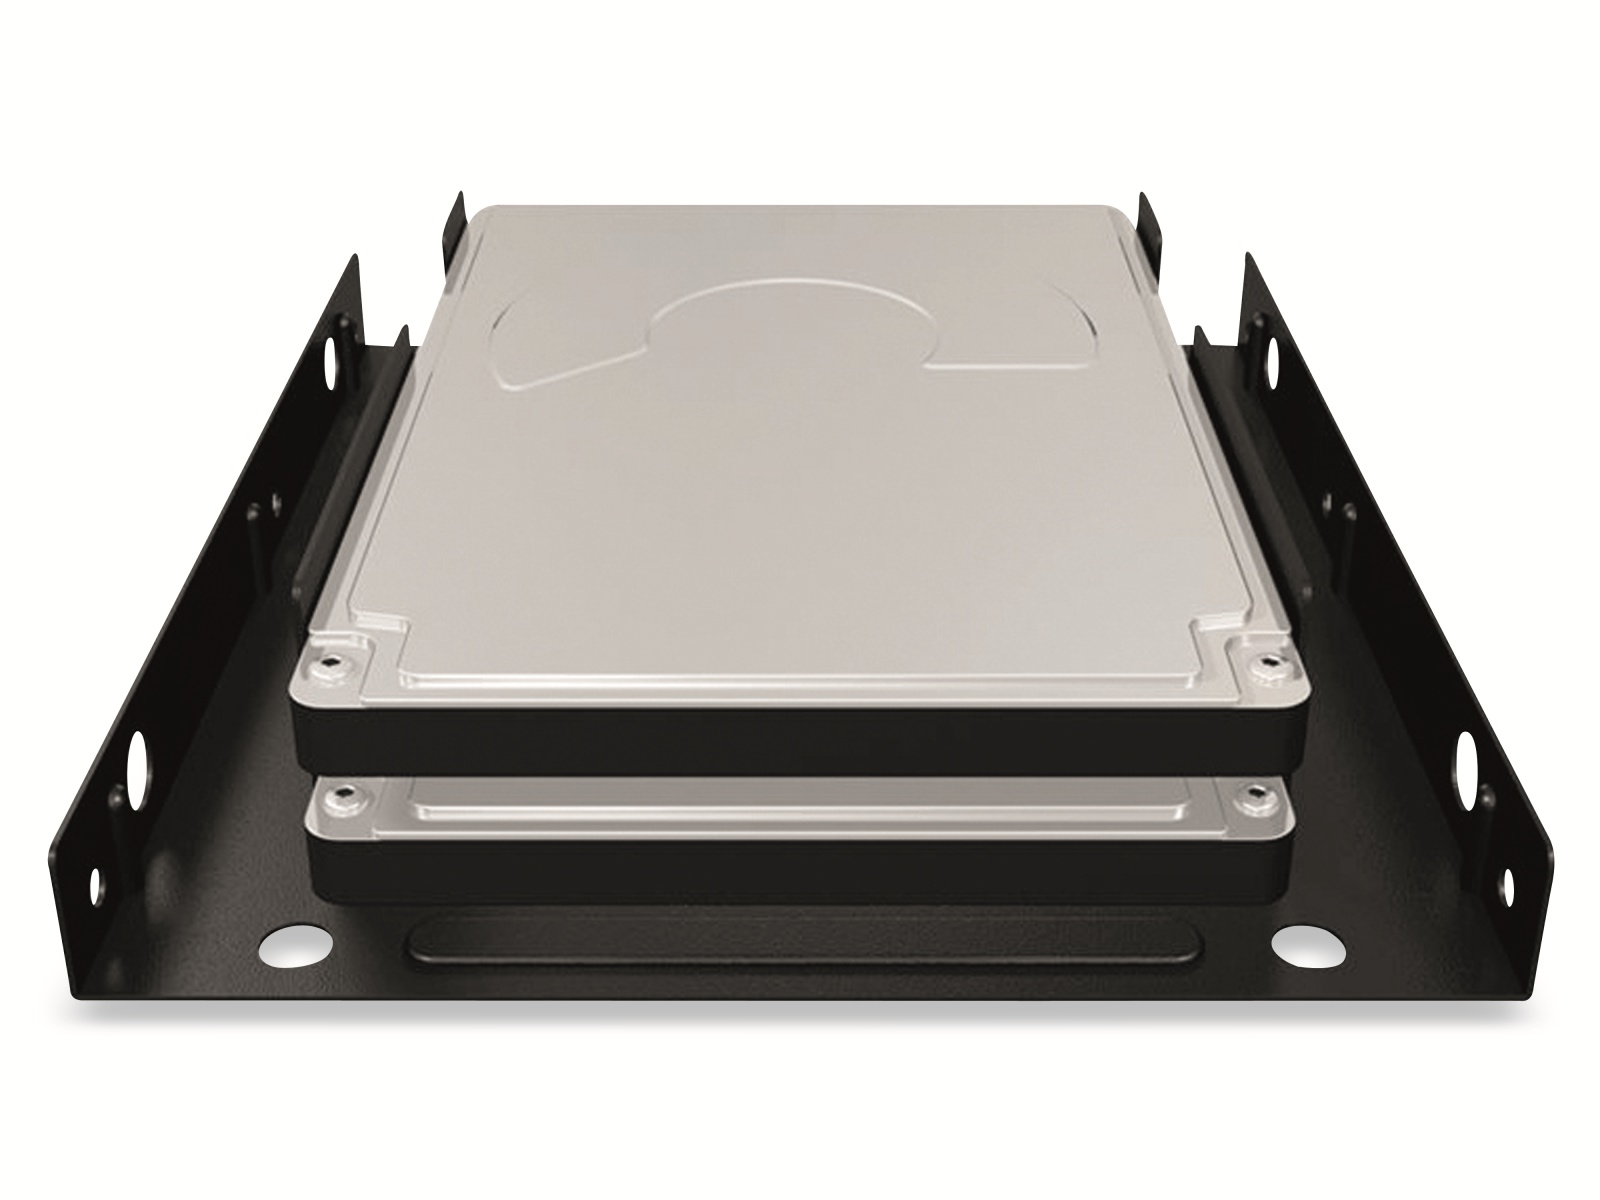 ICY BOX Einbaurahmen IB-AC643, 2x 2,5" SSD/HDD